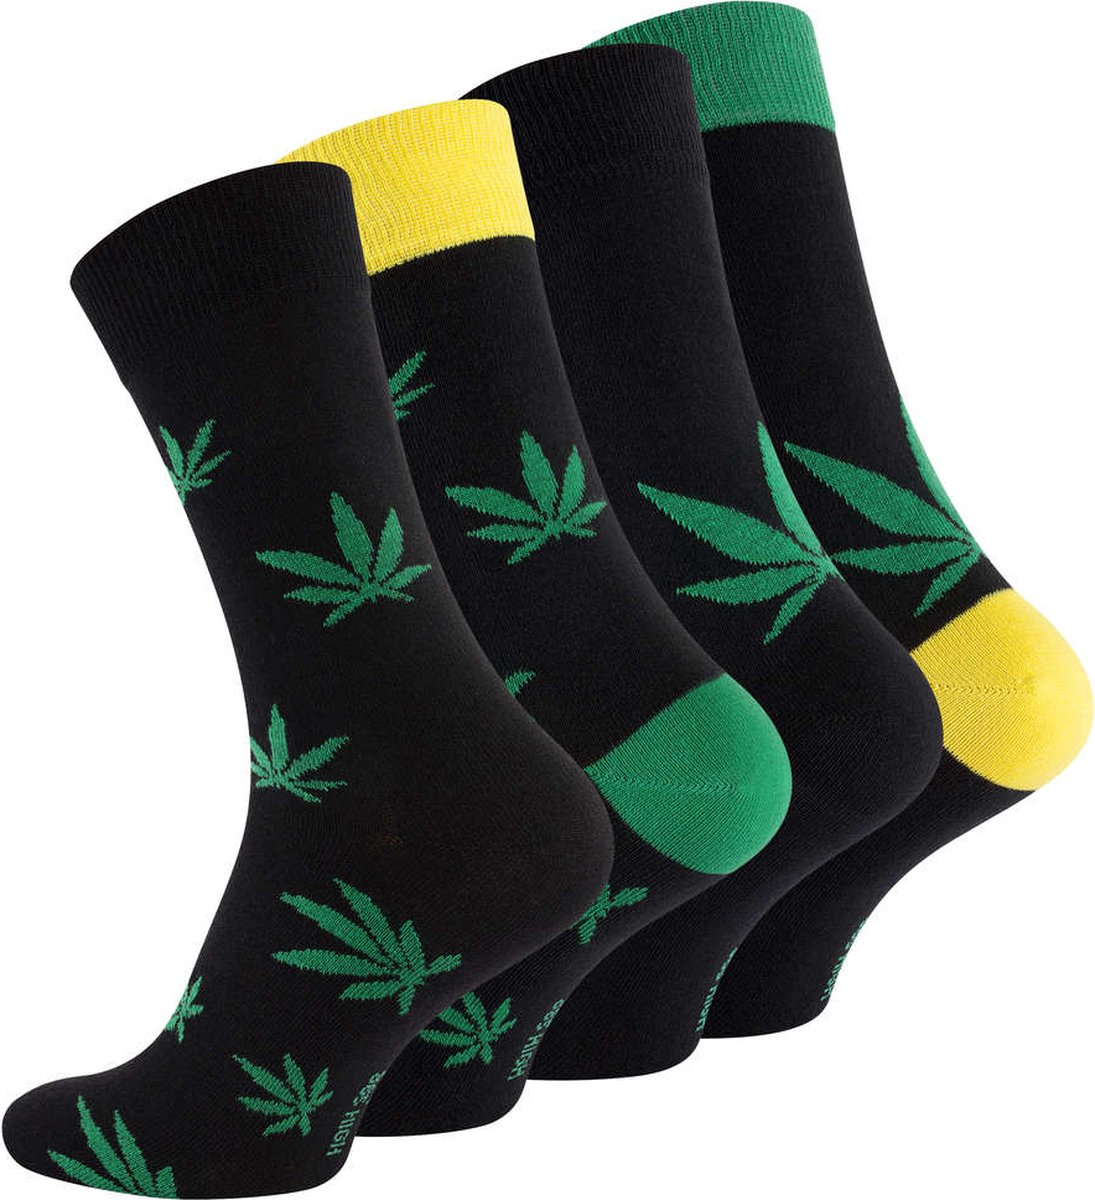 Calzera 4 Paar Wiet Sokken - Cannabis sokken - Weed - Hennep - 365 High - Stoners sokken - Maat 40-46